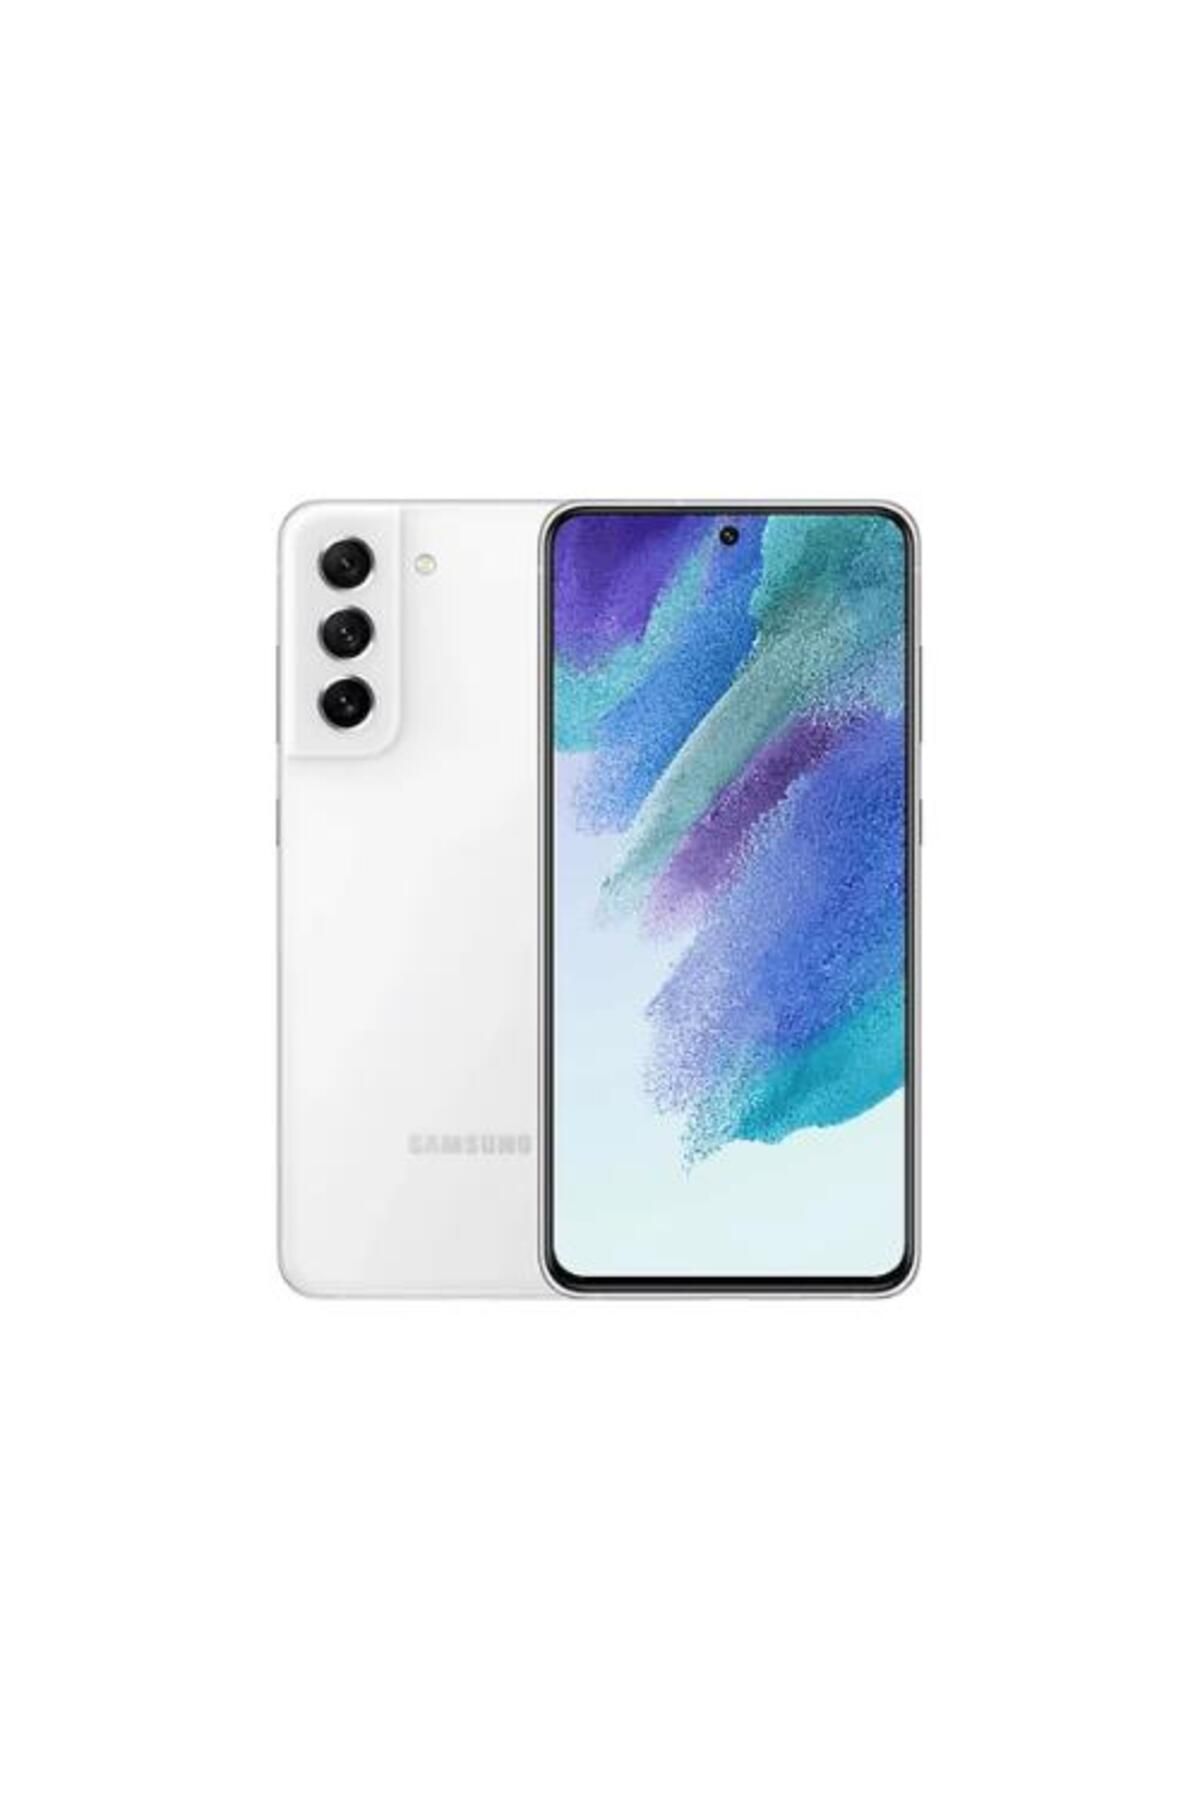 Samsung Yenilenmiş SAMSUNG GALAXY S21 FE 128GB -B Kalite- Beyaz